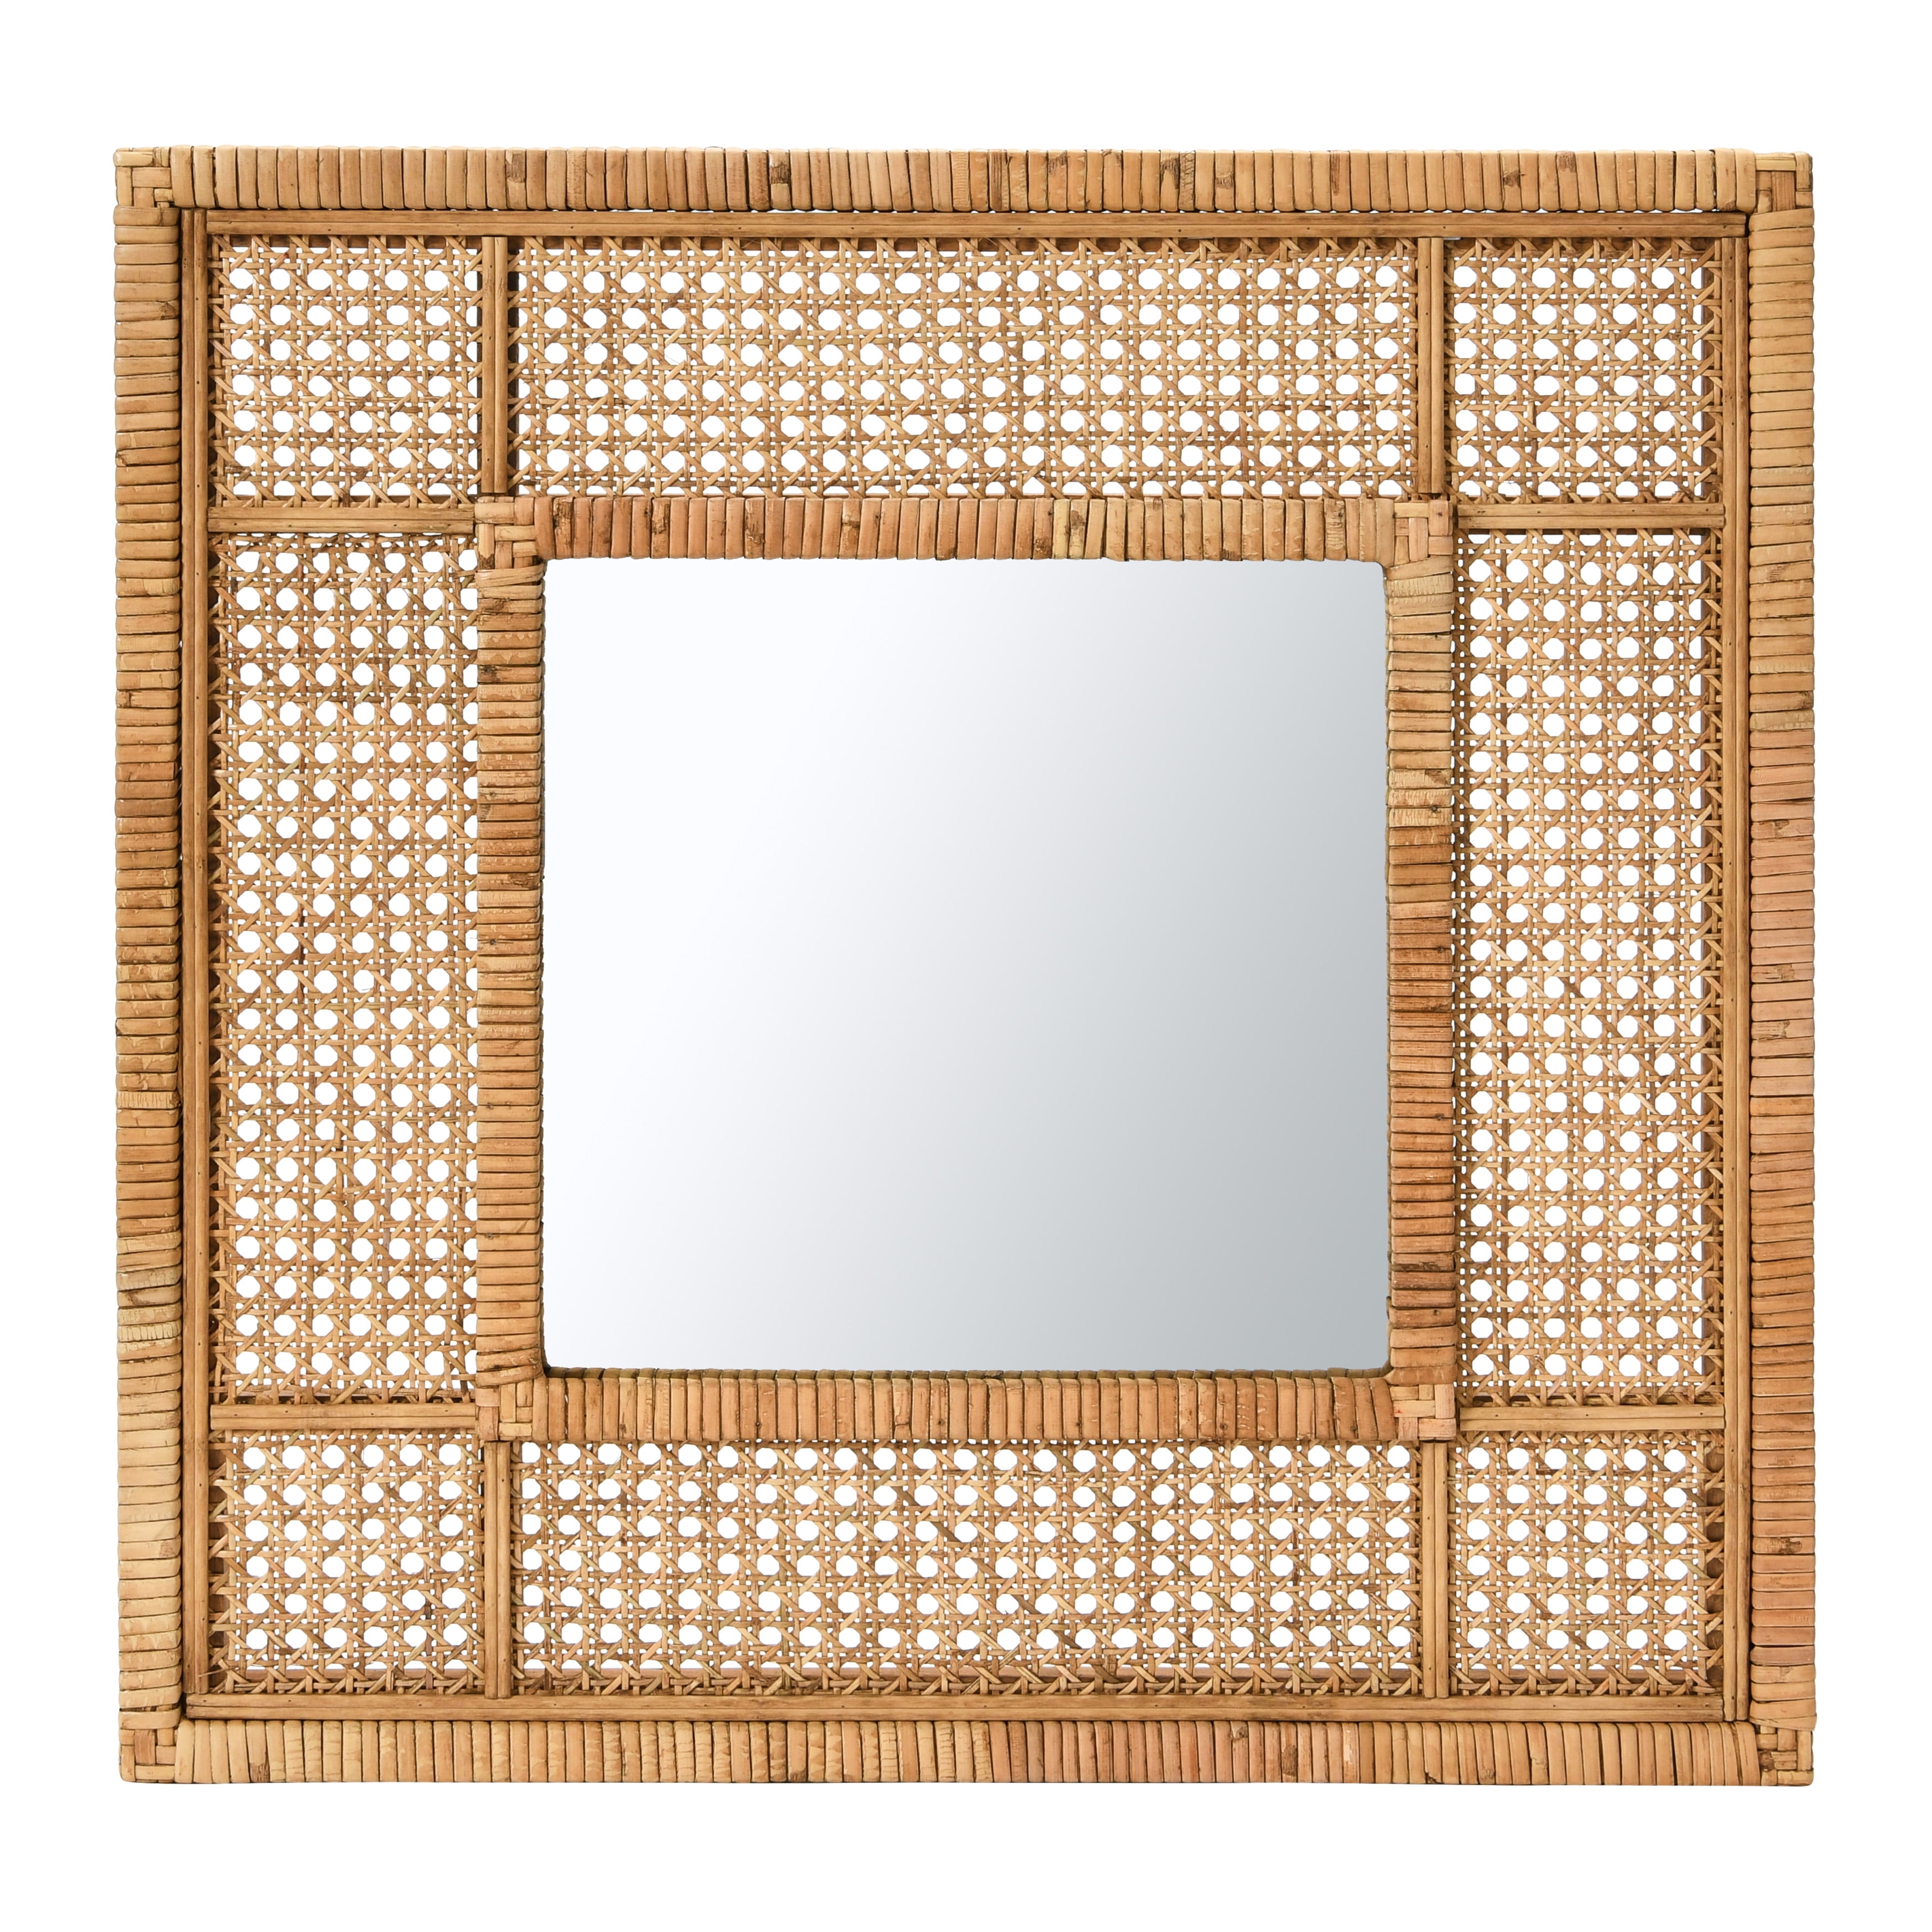 Pesaro 23.5 Wall-mount Bathroom Vanity Mirror Set NATURAL RED OAK Finish  VM-V14177-RO